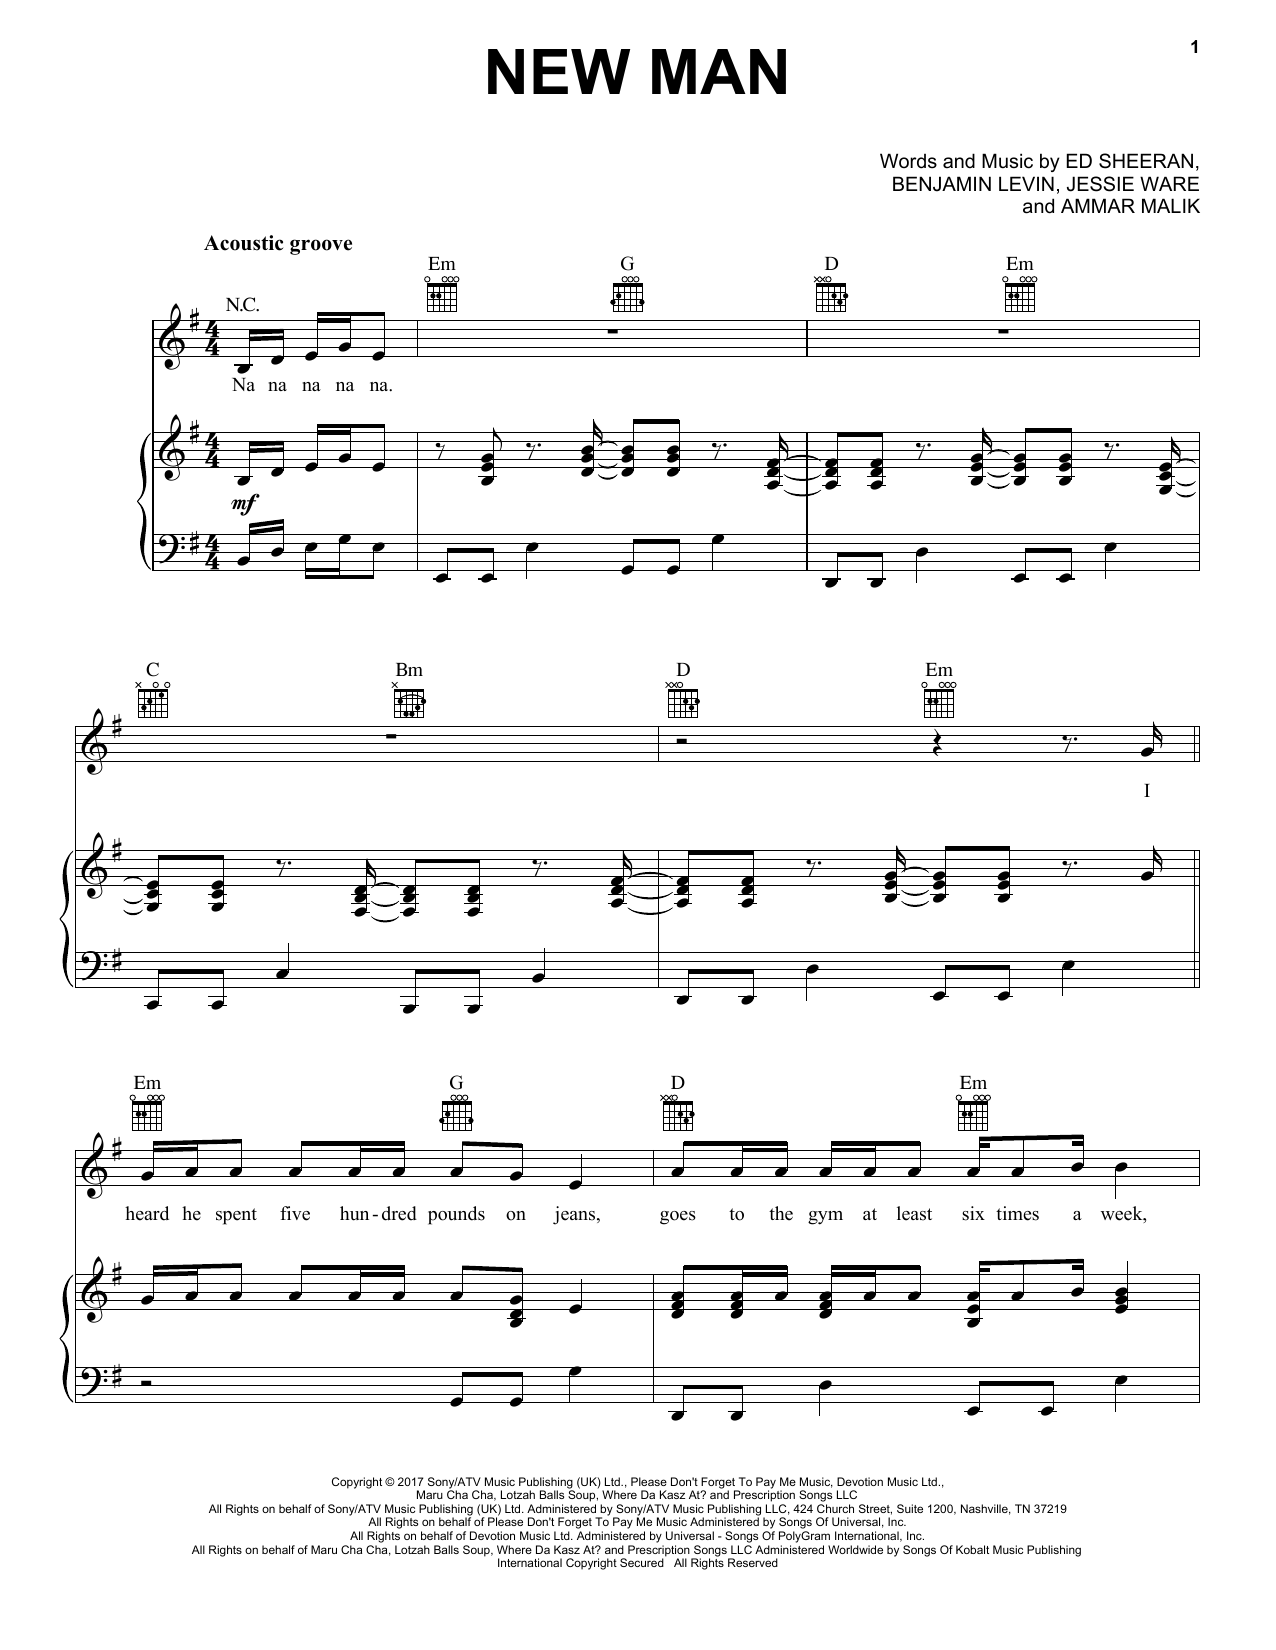 Ed Sheeran New Man Sheet Music Notes & Chords for Lyrics & Chords - Download or Print PDF